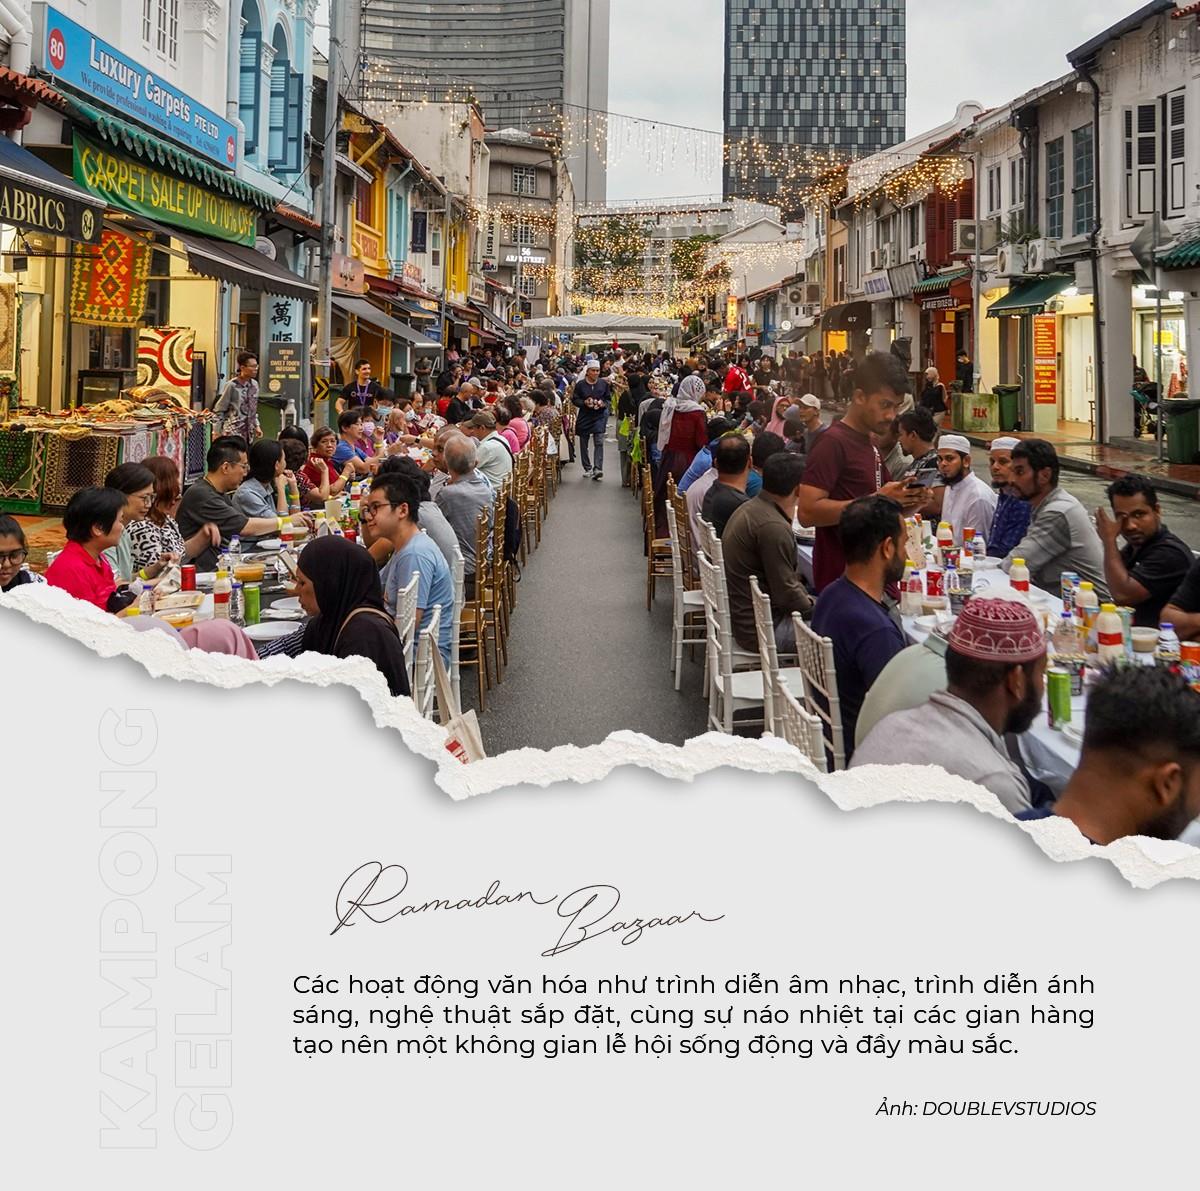 Kampong Gelam: Khám phá nét quyến rũ của một khu phố di sản giữa lòng đô thị Singapore - Ảnh 2.